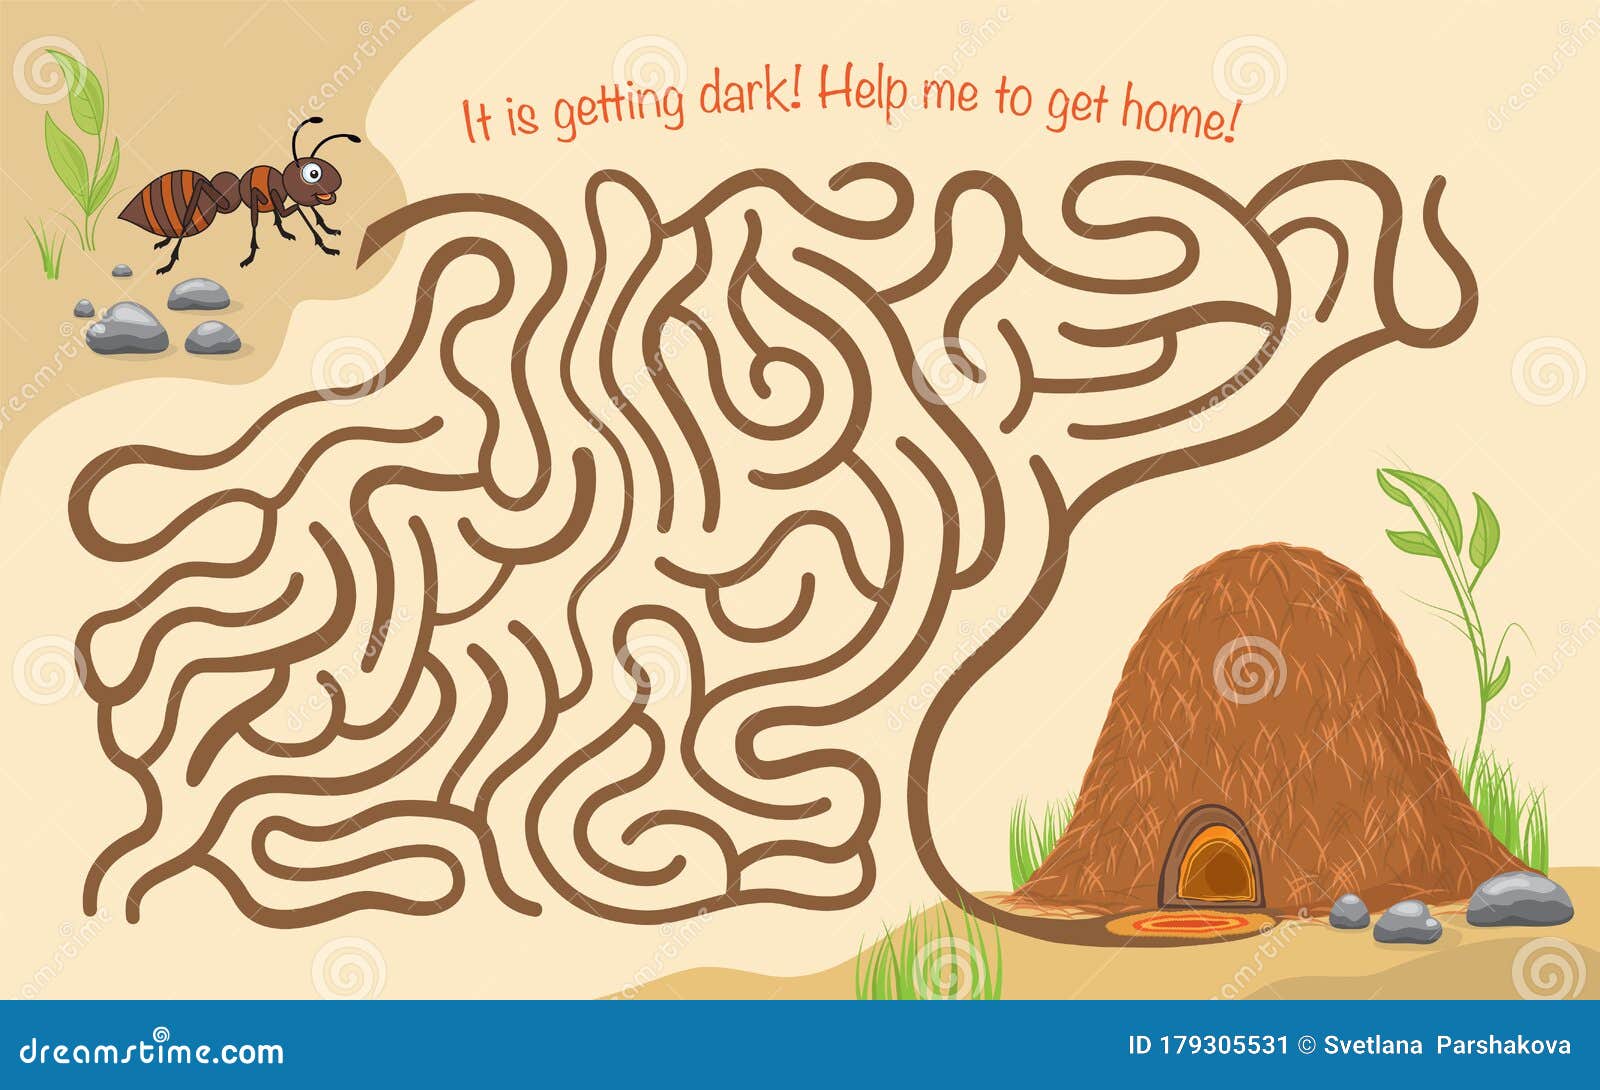 Jogos online para crianças: O besouro no labirinto